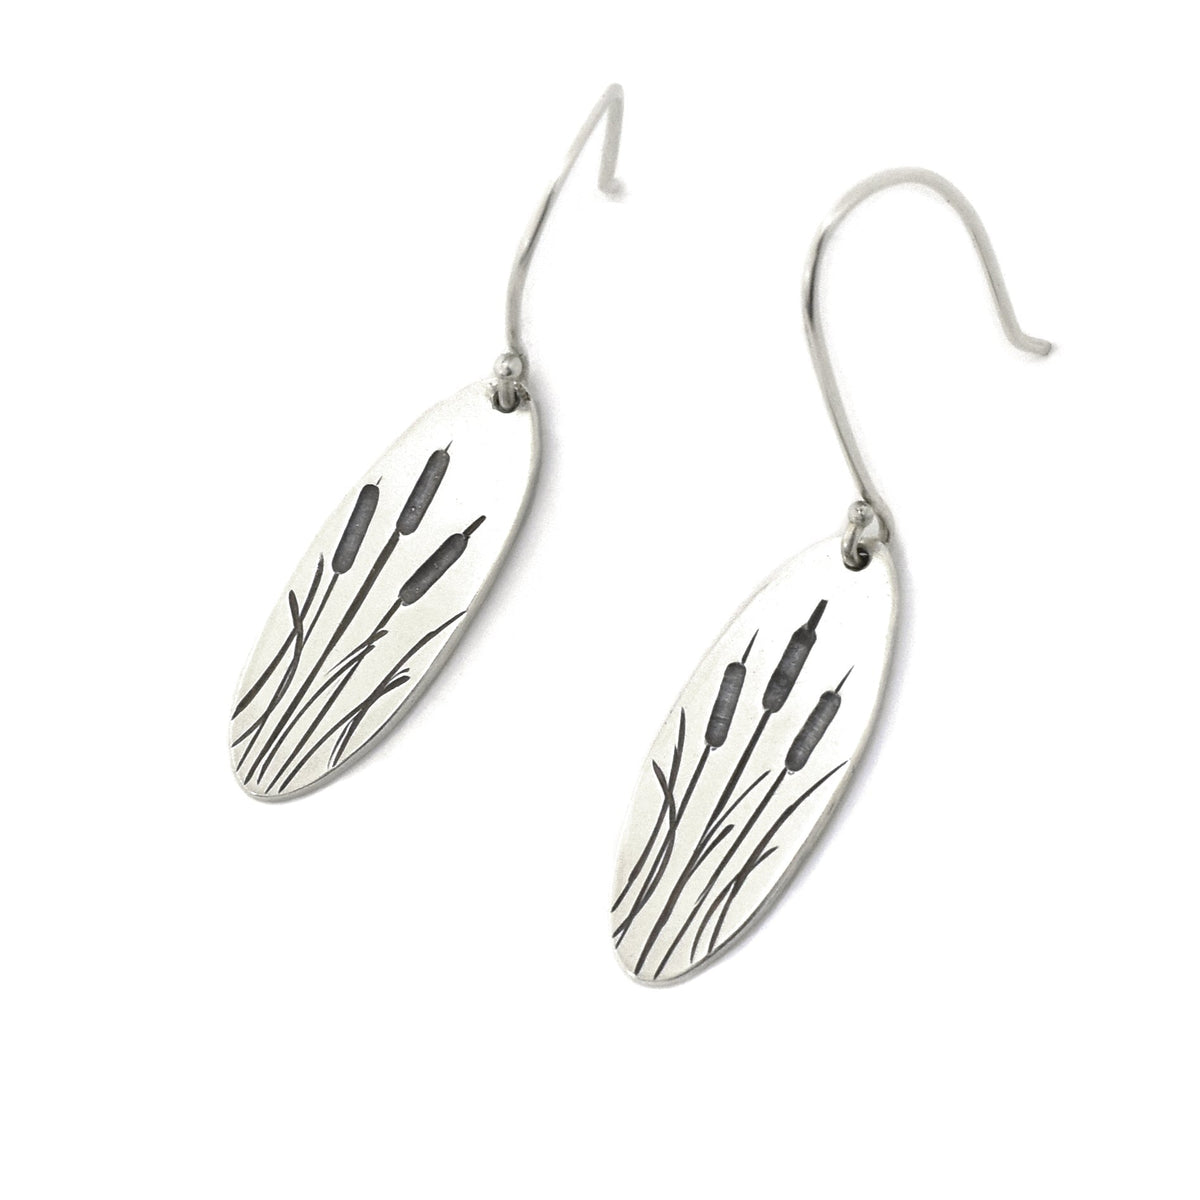 Cattail Earrings - Silver Earrings   6878 - handmade by Beth Millner Jewelry